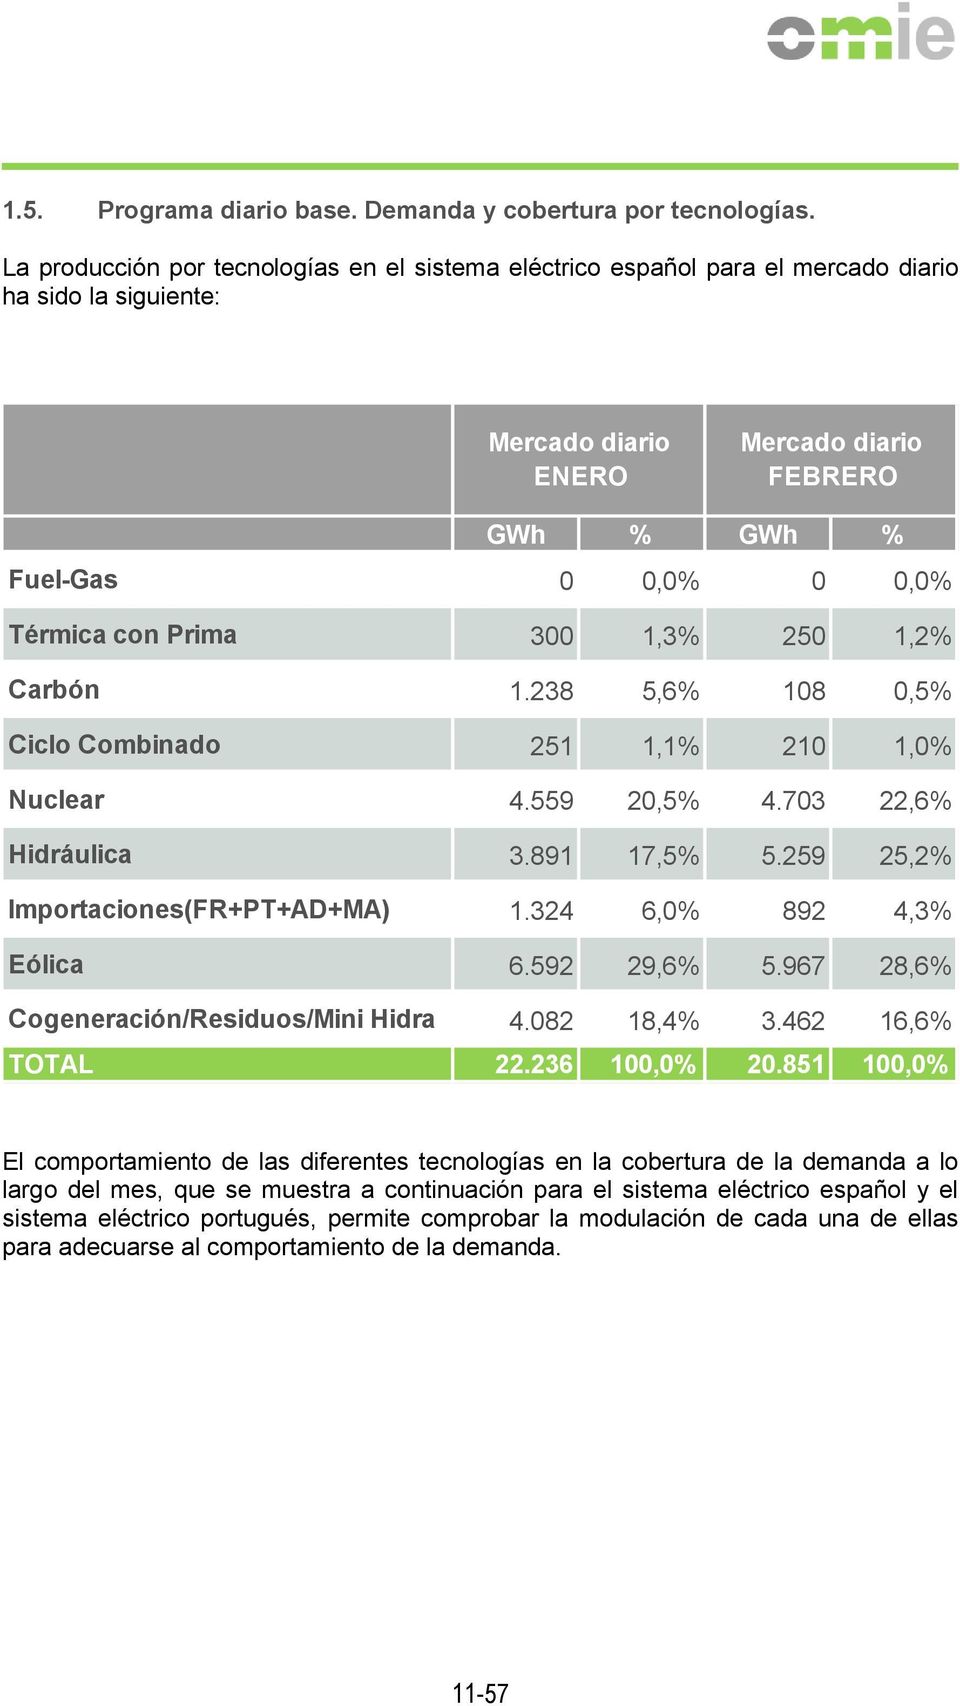 Prima 300 1,3% 250 1,2% Carbón 1.238 5,6% 108 0,5% Ciclo Combinado 251 1,1% 210 1,0% Nuclear 4.559 20,5% 4.703 22,6% Hidráulica 3.891 17,5% 5.259 25,2% Importaciones(FR+PT+AD+MA) 1.